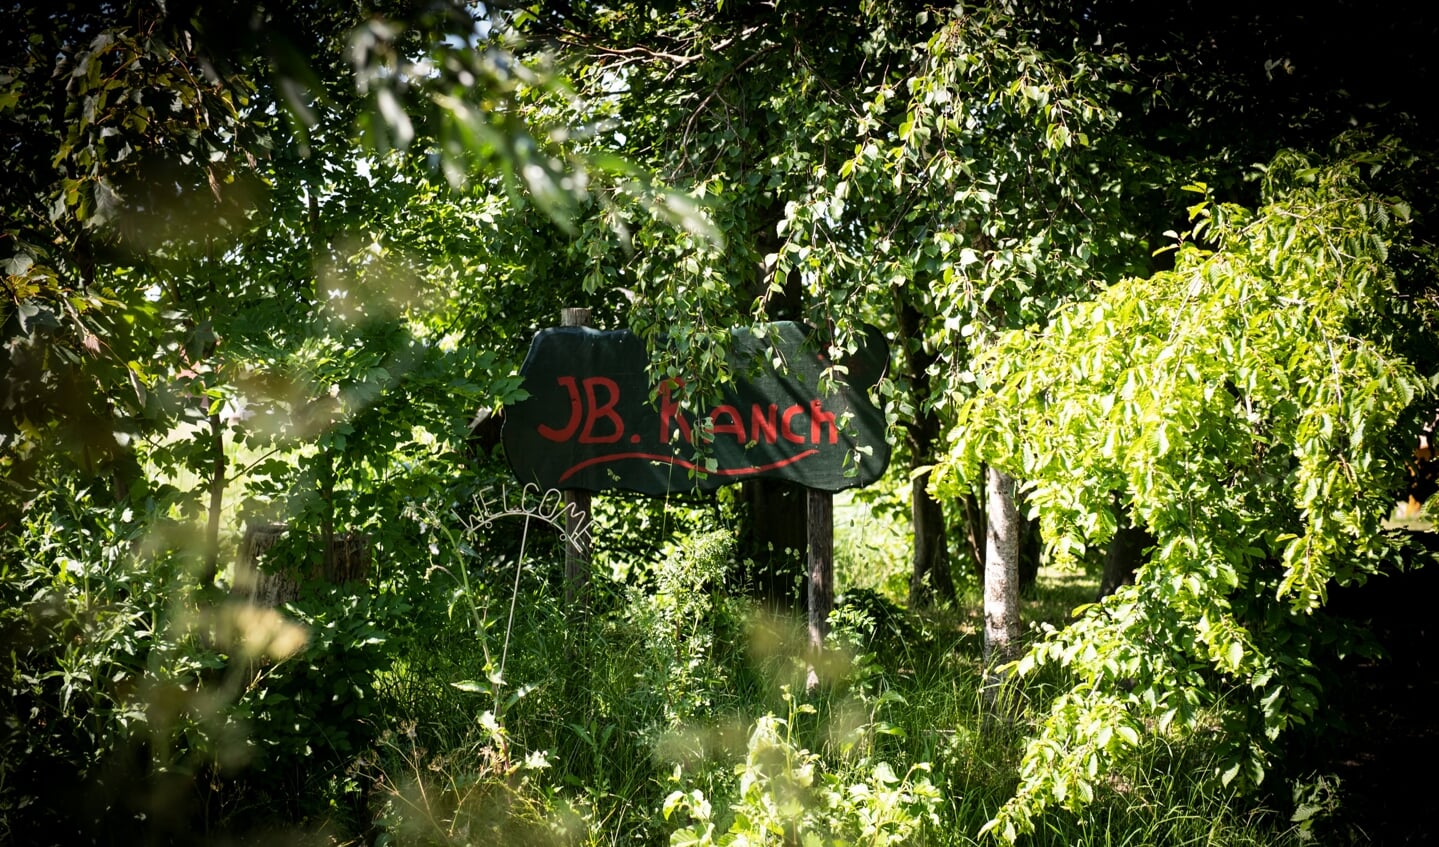 Knus verscholen in het groen ligt de JB Ranch. Het lieflijk ogende terrein was volgens Van den Bout dé splijtzwam in de relatie tussen zijn neven.